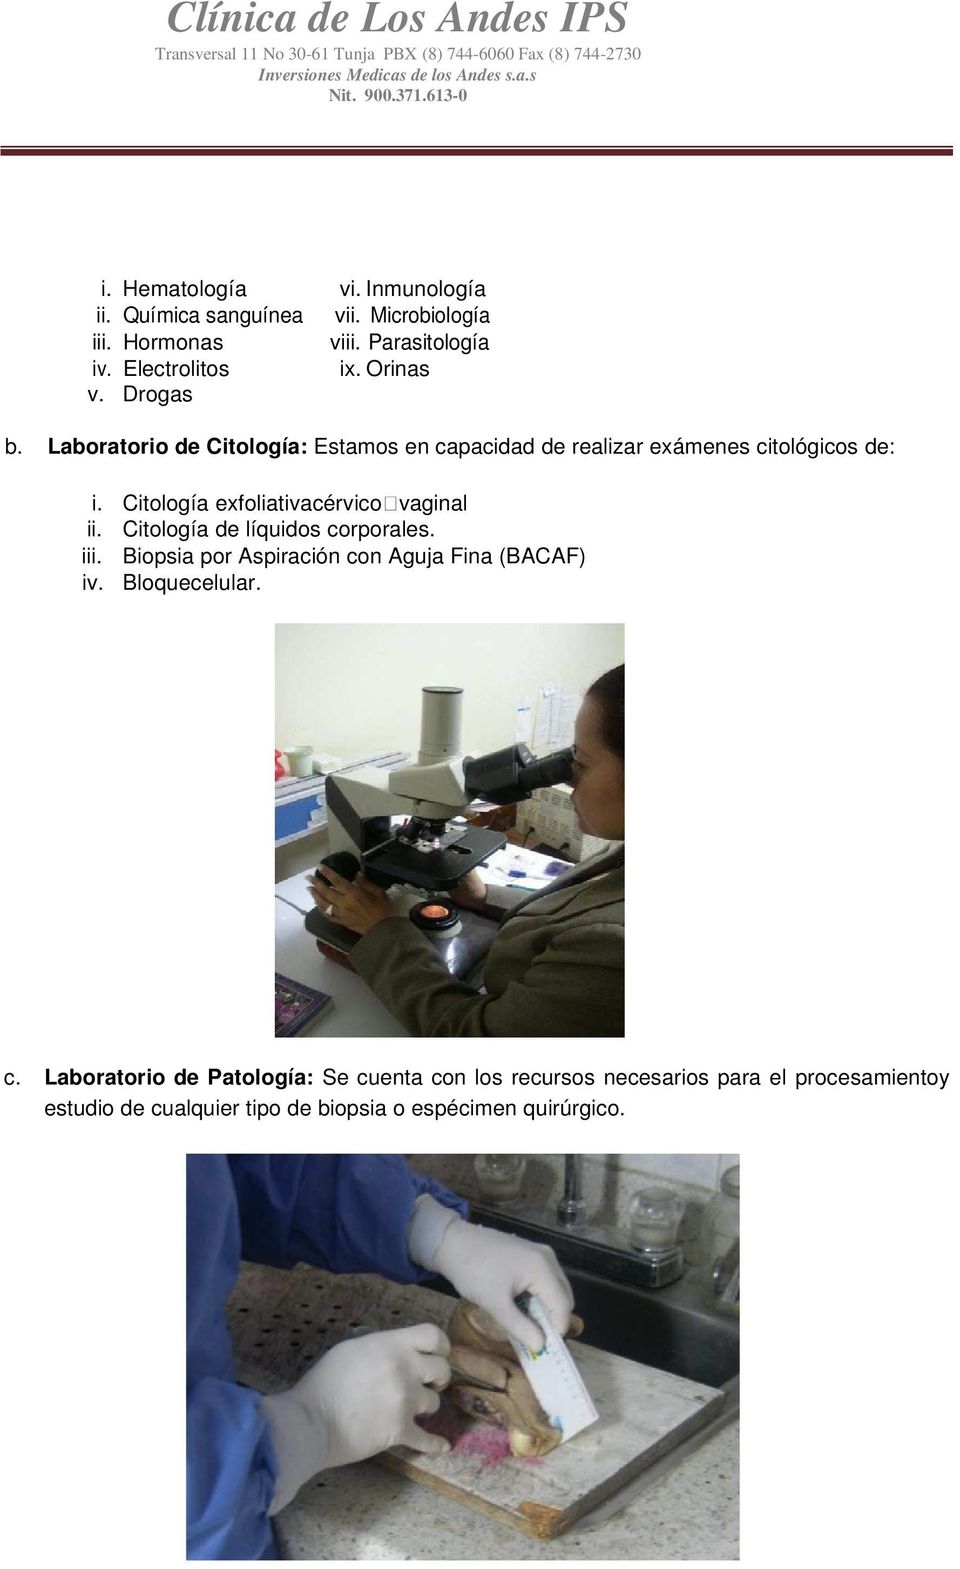 Citología exfoliativacérvicovaginal ii. Citología de líquidos corporales. iii. Biopsia por Aspiración con Aguja Fina (BACAF) iv.